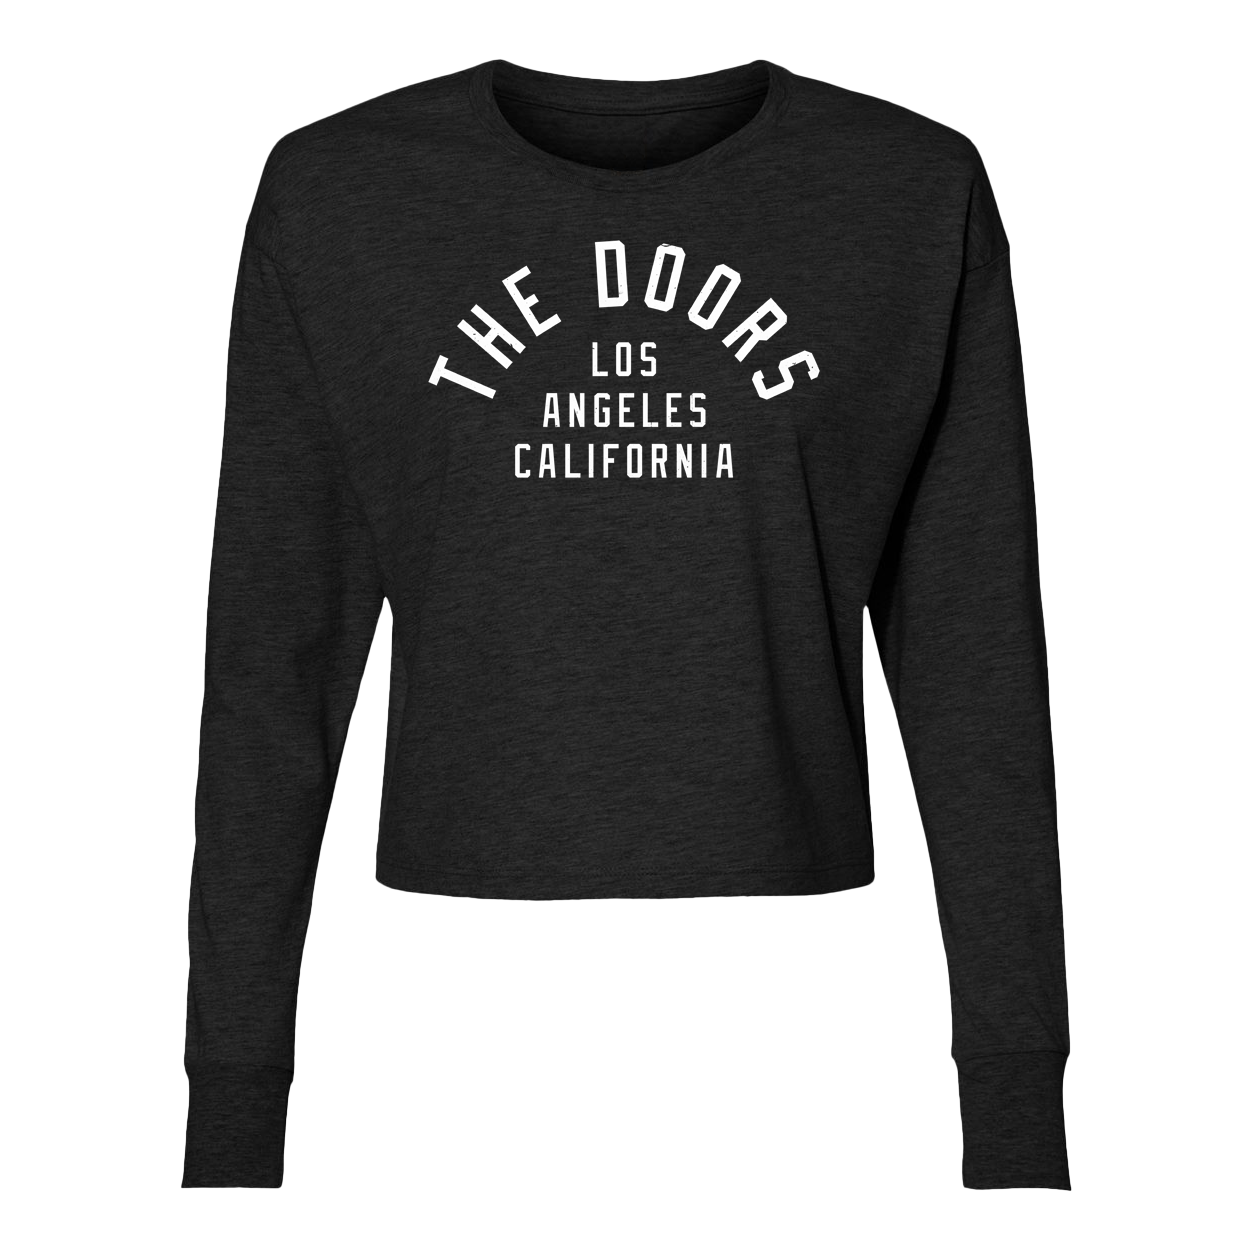 Ladies The Doors Los Angeles California Cropped Longsleeve T-Shirt